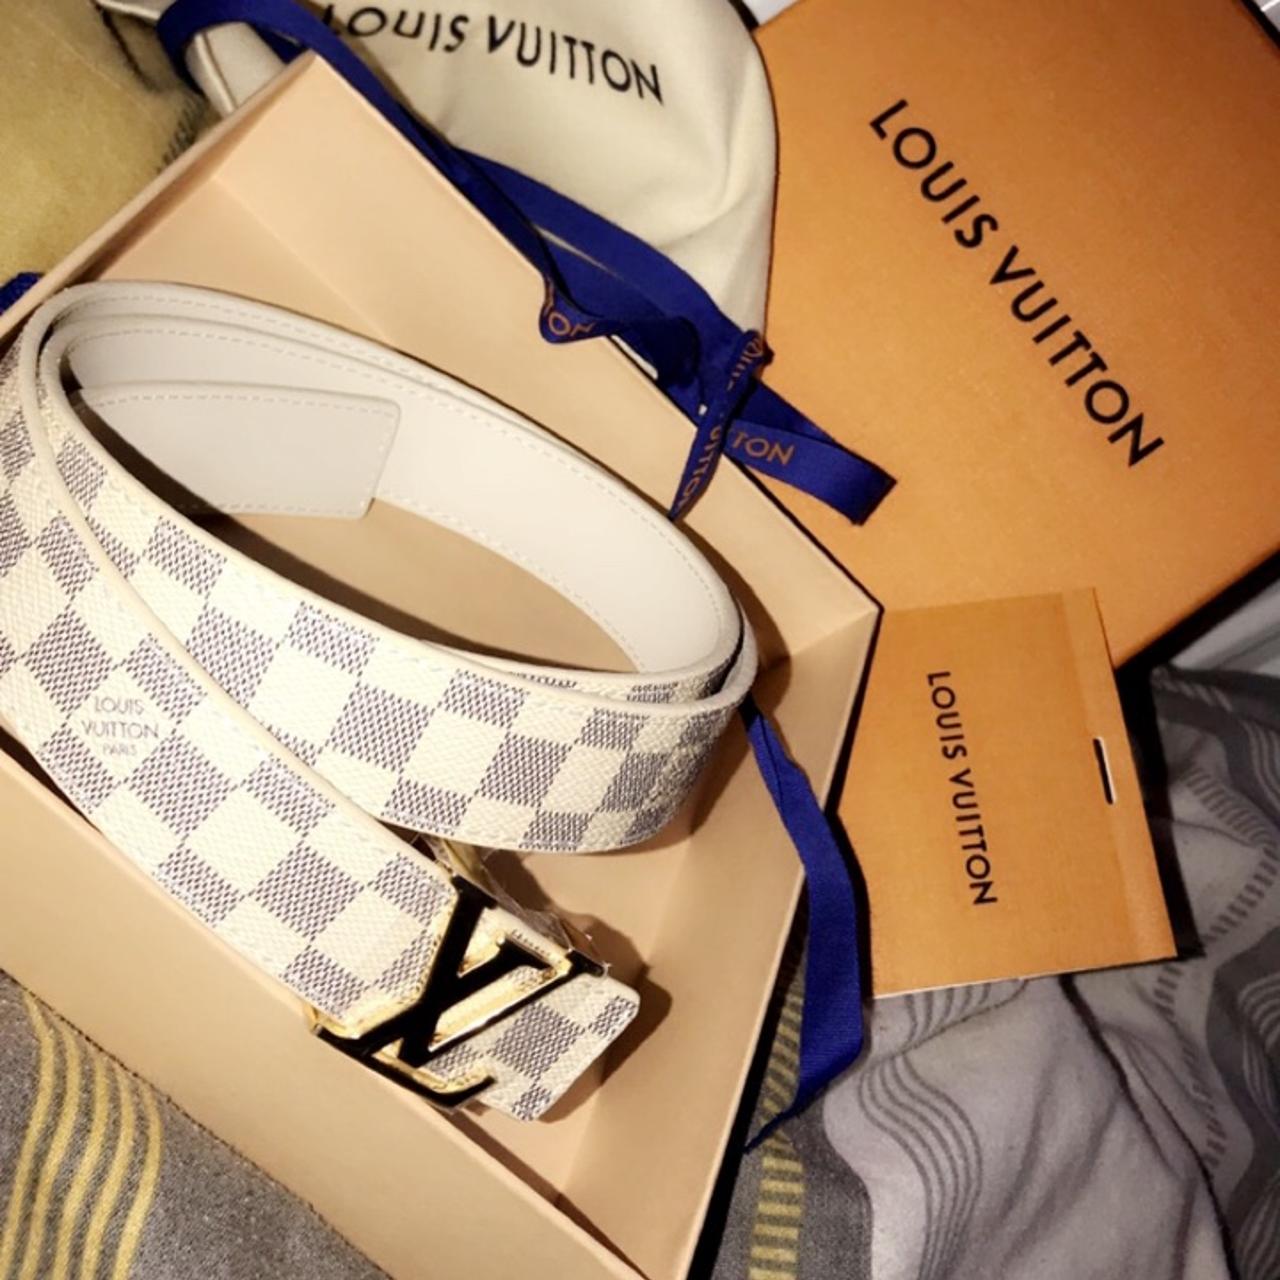 Louis Vuitton Belt Got couple seasons ago don't - Depop